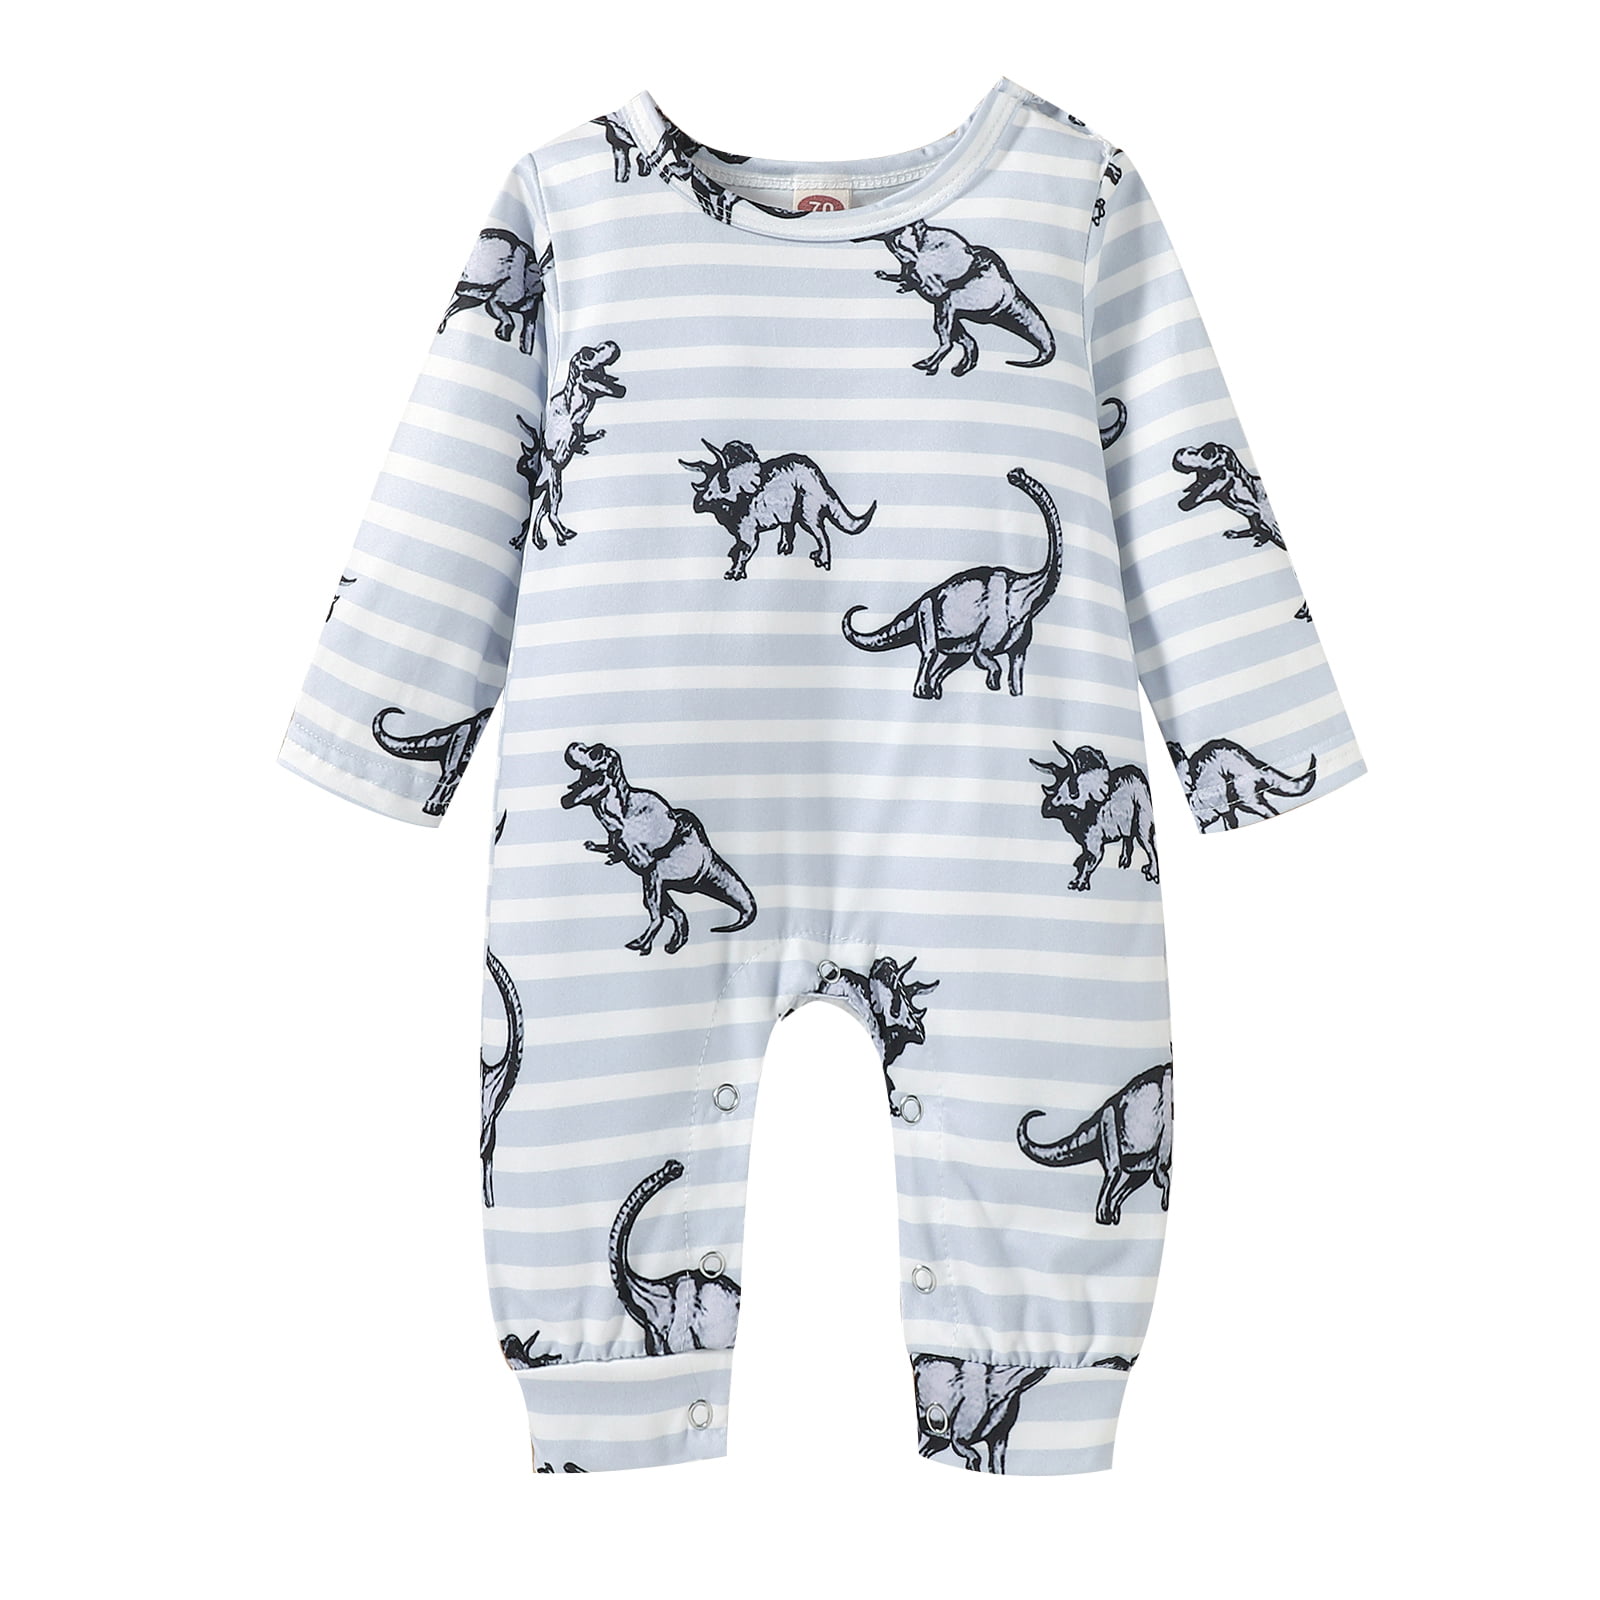 Newborn Infant Baby Baby Boys Girls Dinosaur Sleepsuits Pyjamas Kids Toddlers Onesie Pjs Romper Jumpsuit One 6-12 Months, Short Sleeves-Blue 